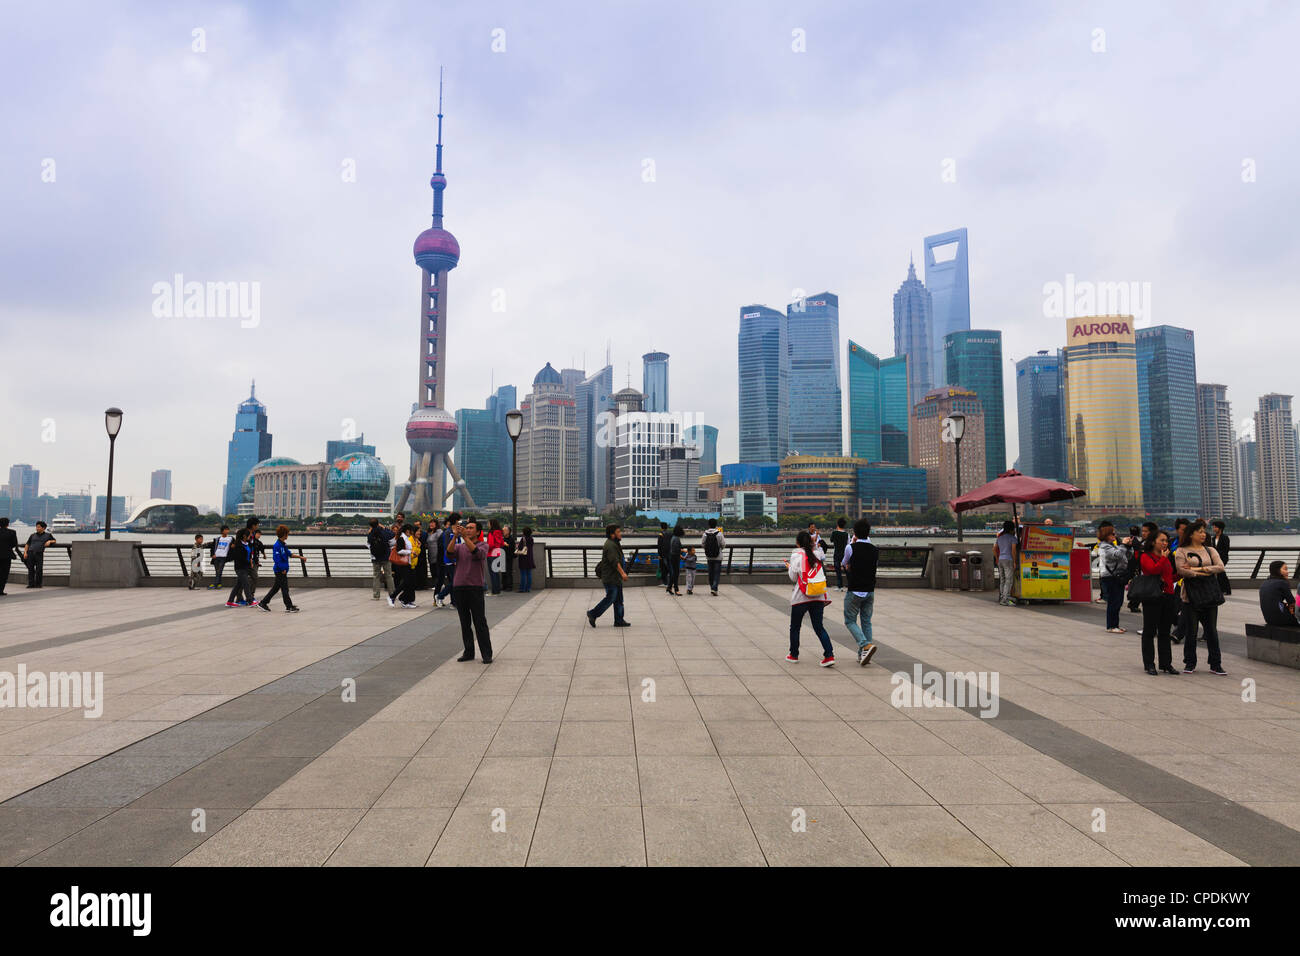 Les piétons et les touristes sur le Bund, la skyline futuriste de Pudong de l'autre côté de la rivière Huangpu au-delà, Shanghai, Chine, Asie Banque D'Images